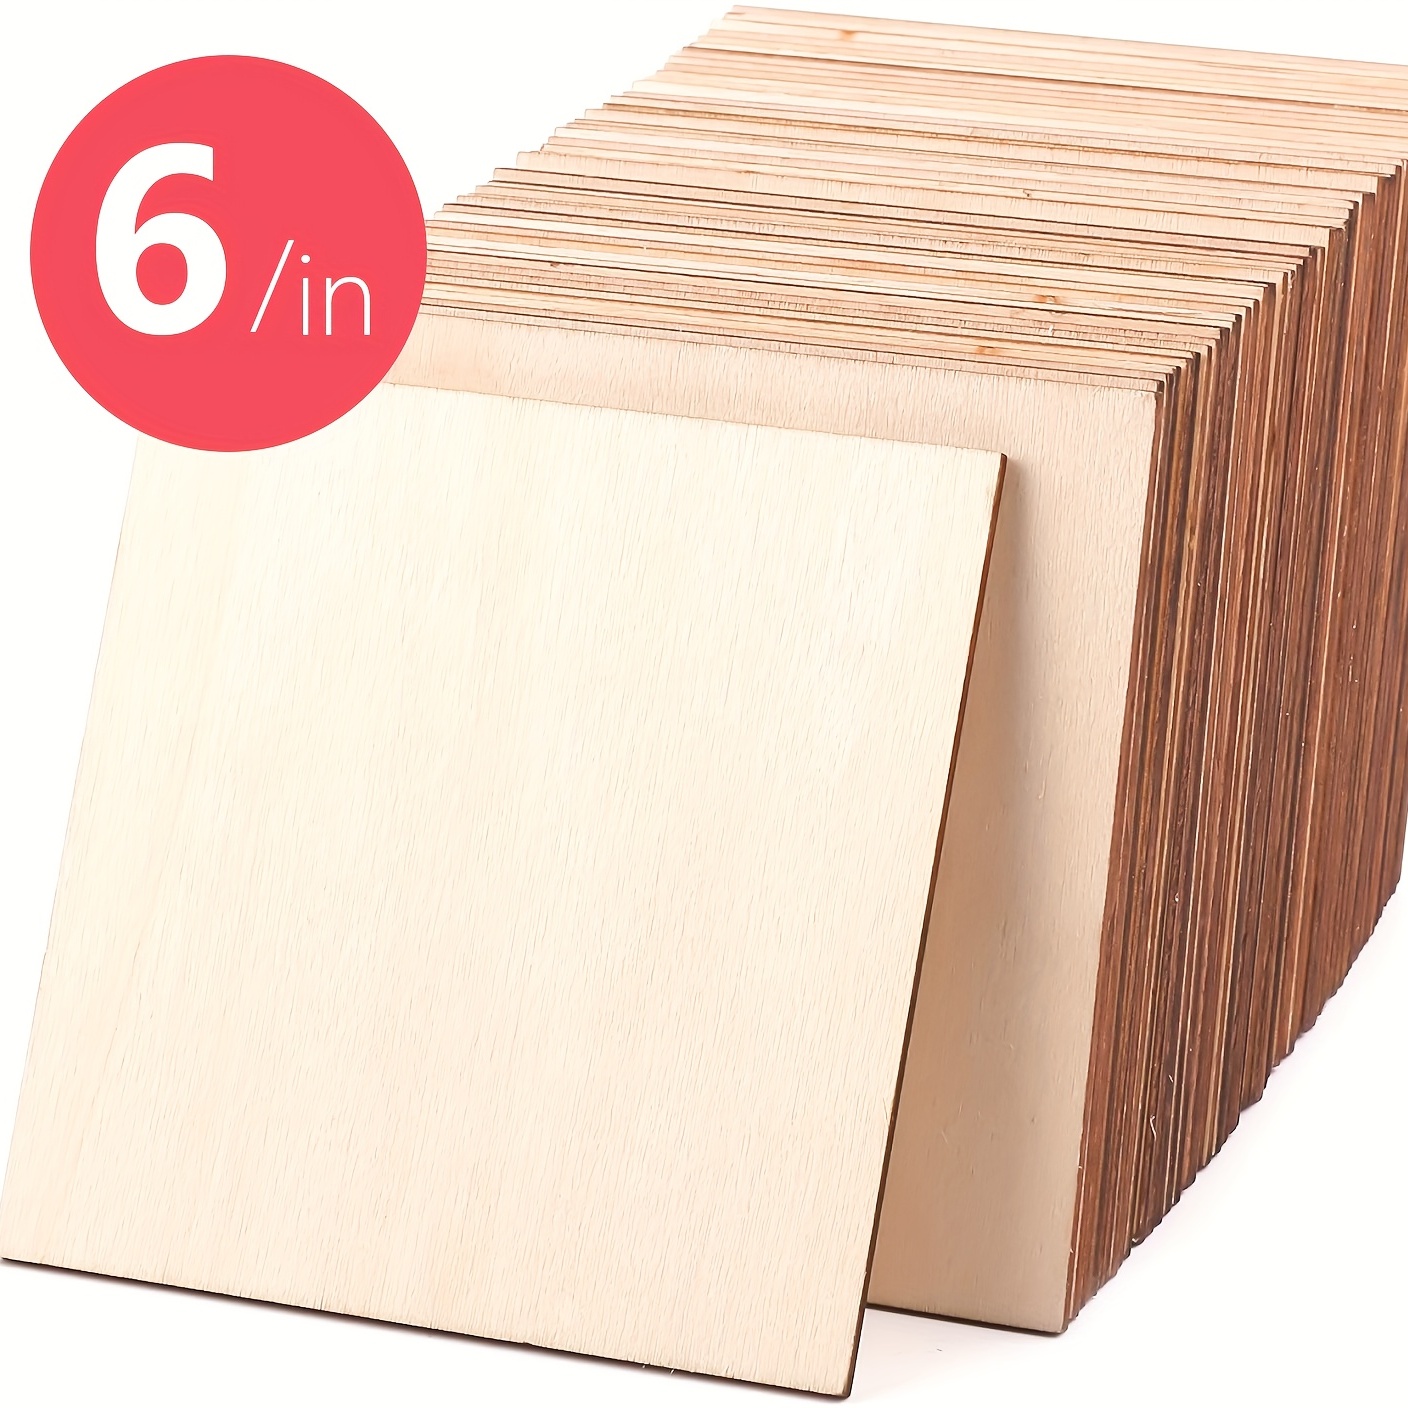 Cuadrados de madera para manualidades, 50 recortes cuadrados de madera sin  terminar, 2 x 2 pulgadas